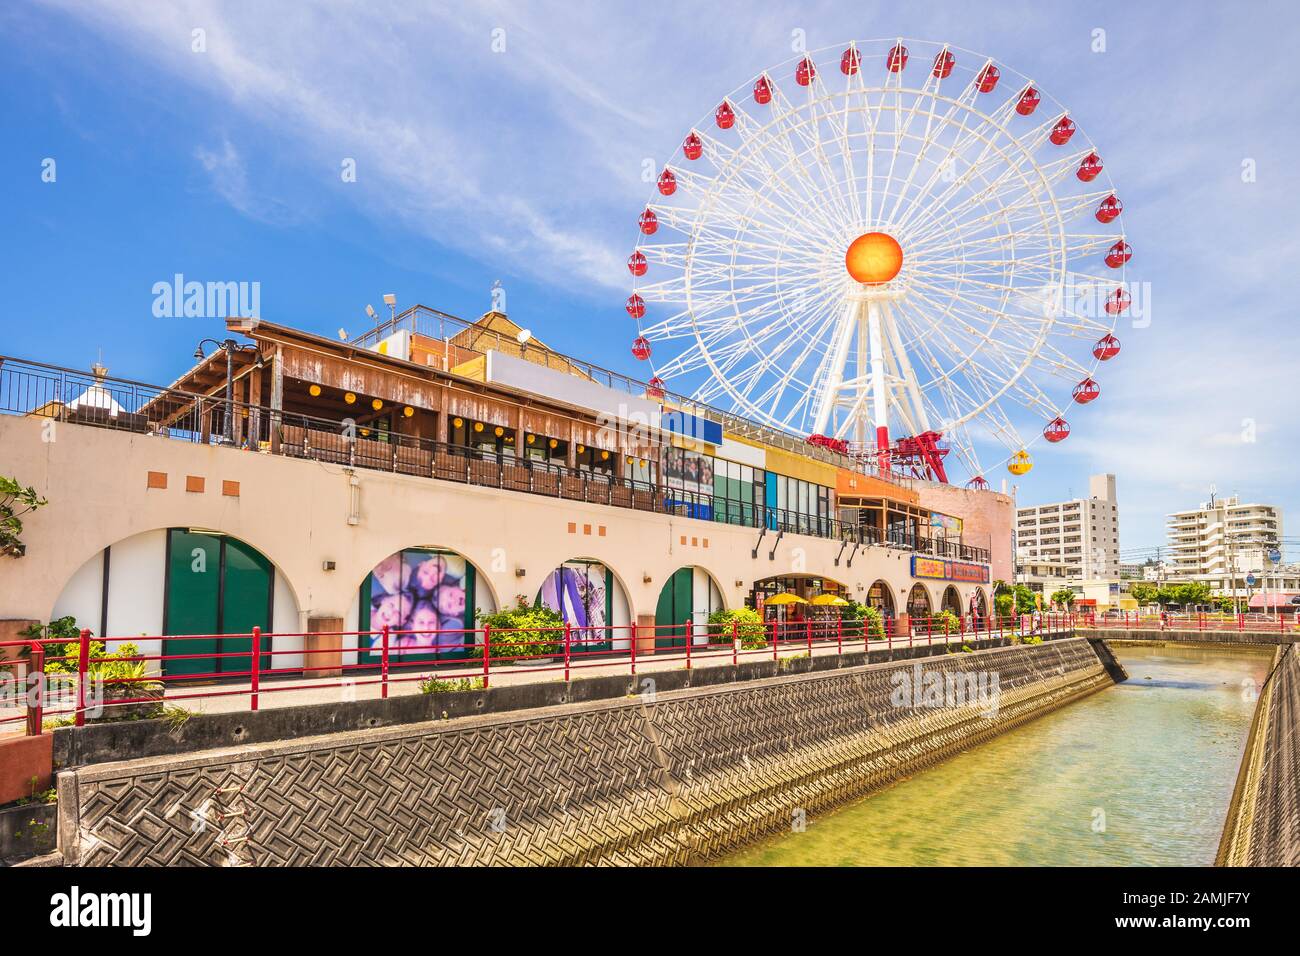 Ferris Wheel dans American Village, okinawa, japon Banque D'Images